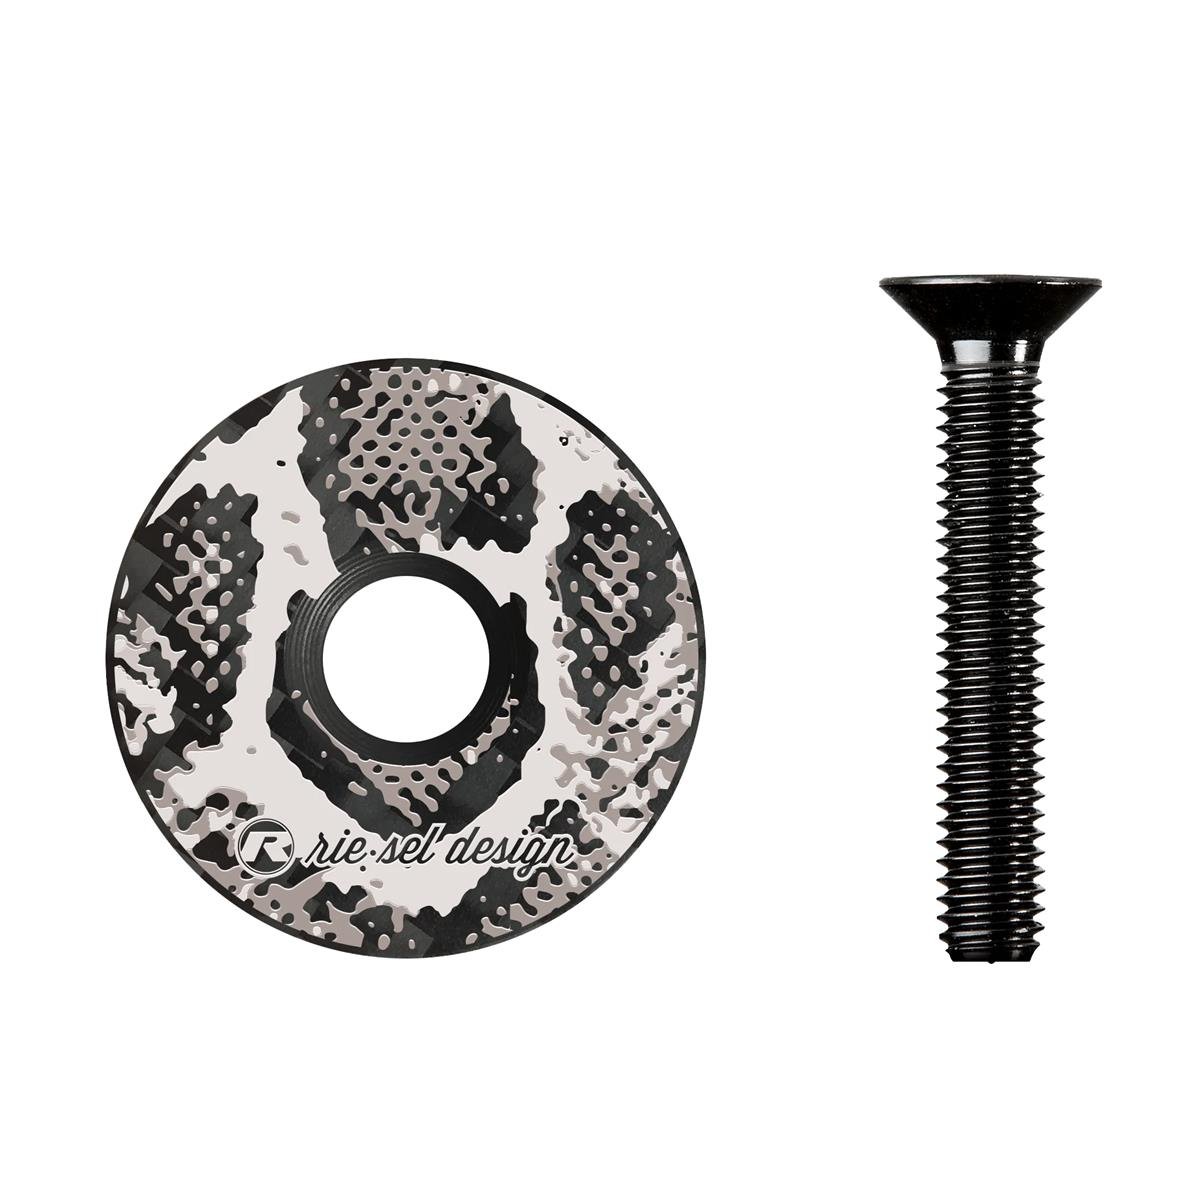 Riesel Design Tappo Serie Sterzo Stem:cap Snake